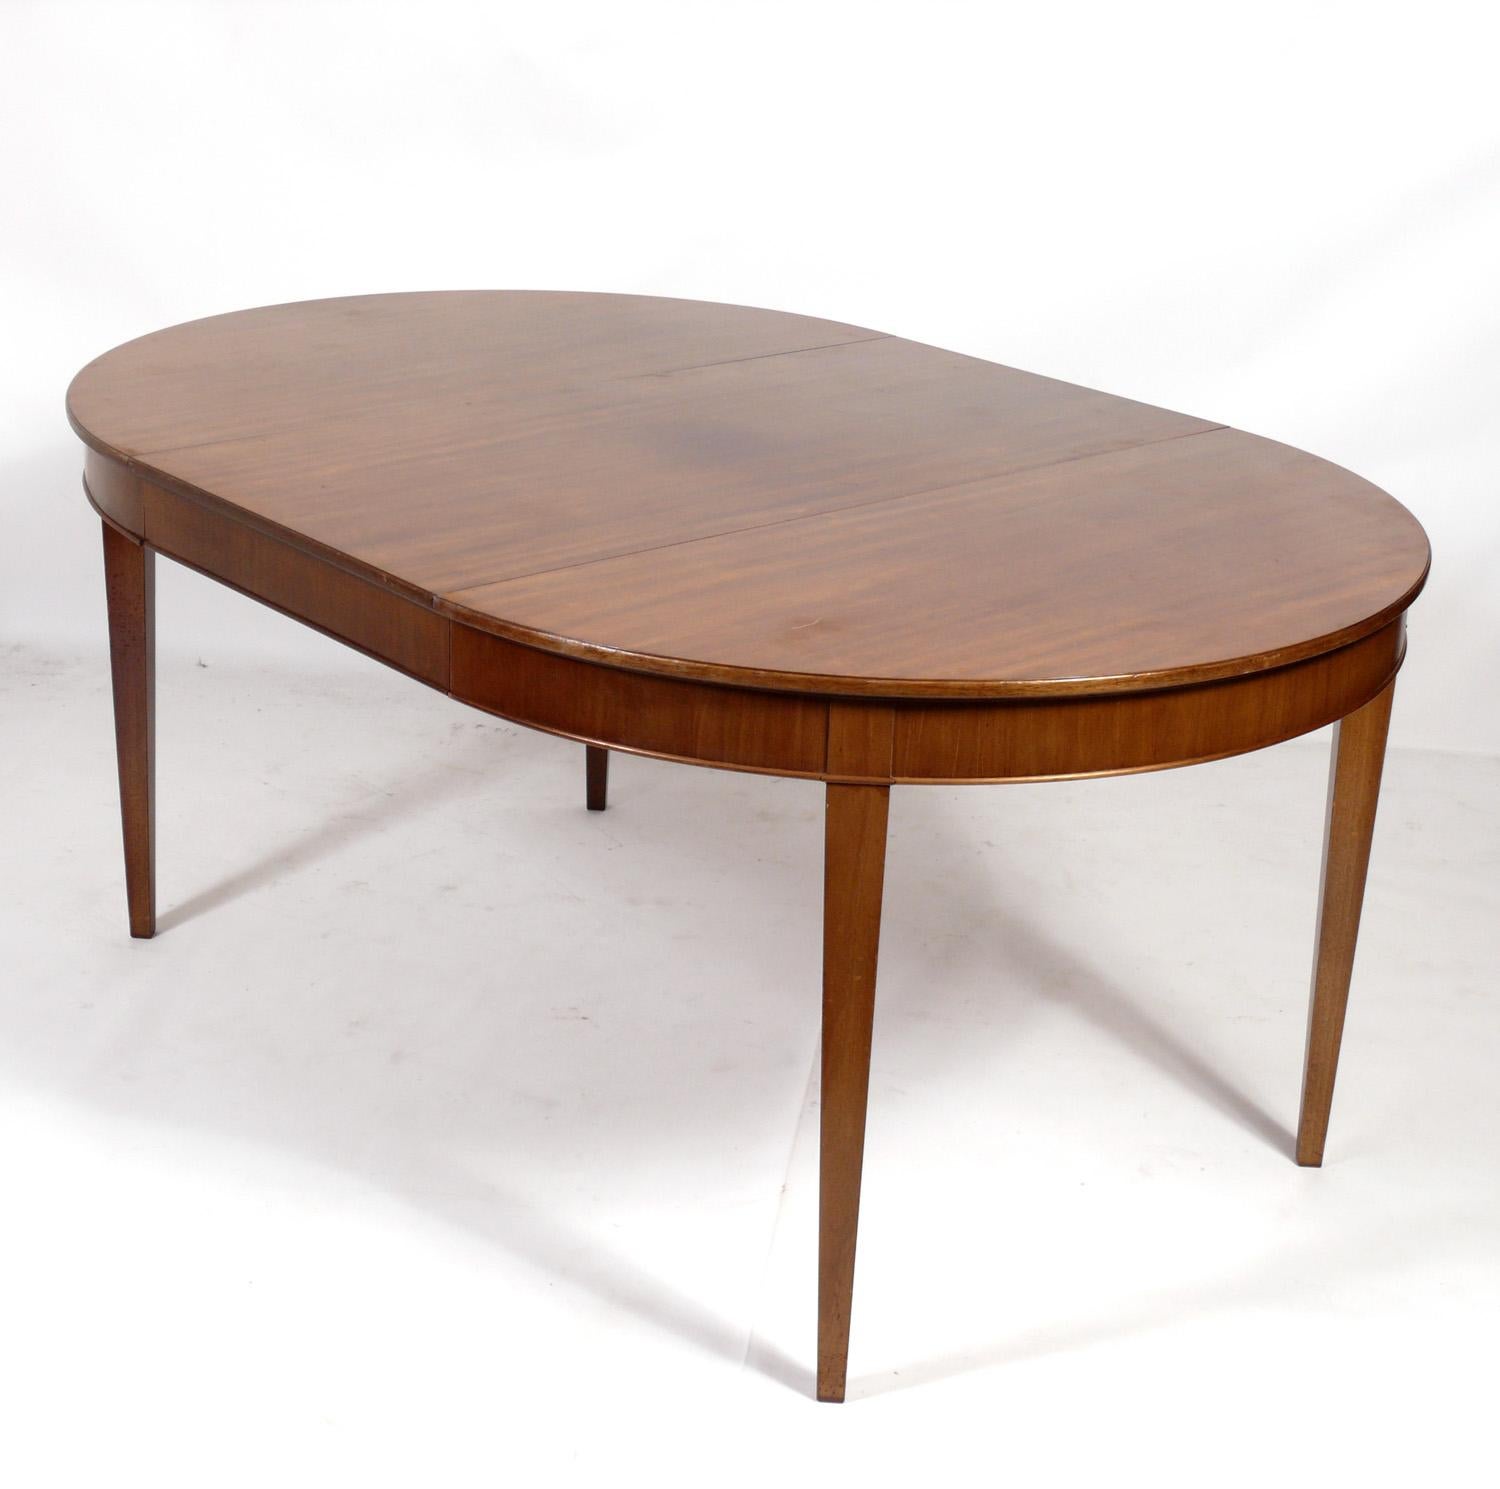 Dänischer moderner Mahagoni-Esstisch, entworfen von Frits Henningsen, Dänemark, ca. 1930er Jahre. Dieser Esstisch wird derzeit neu lackiert und die Blätter werden neu furniert, da ihr Furnier beim Kauf des Sets fehlte. Er lässt sich von einem